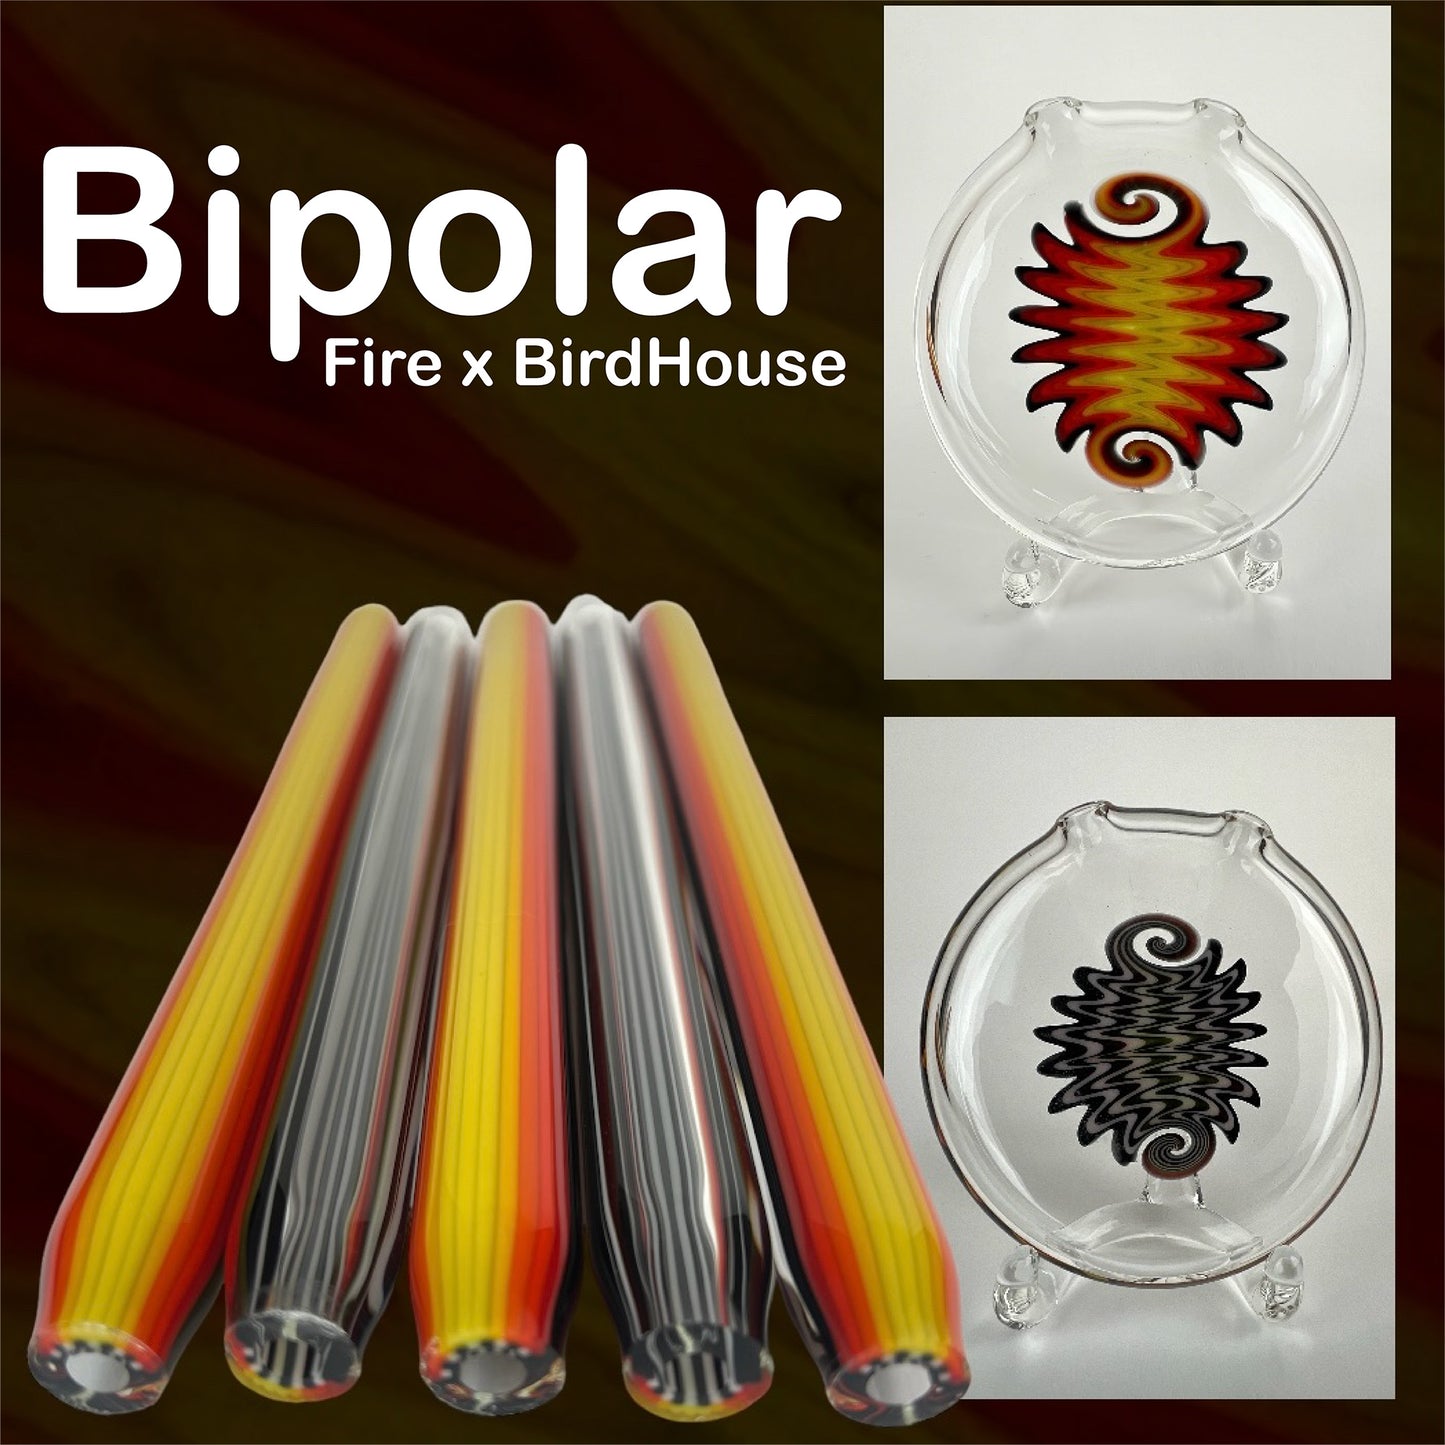 Fire x BirdHouse - Bipolar Tubing - Colorado Color Company - Borosilicate Glass